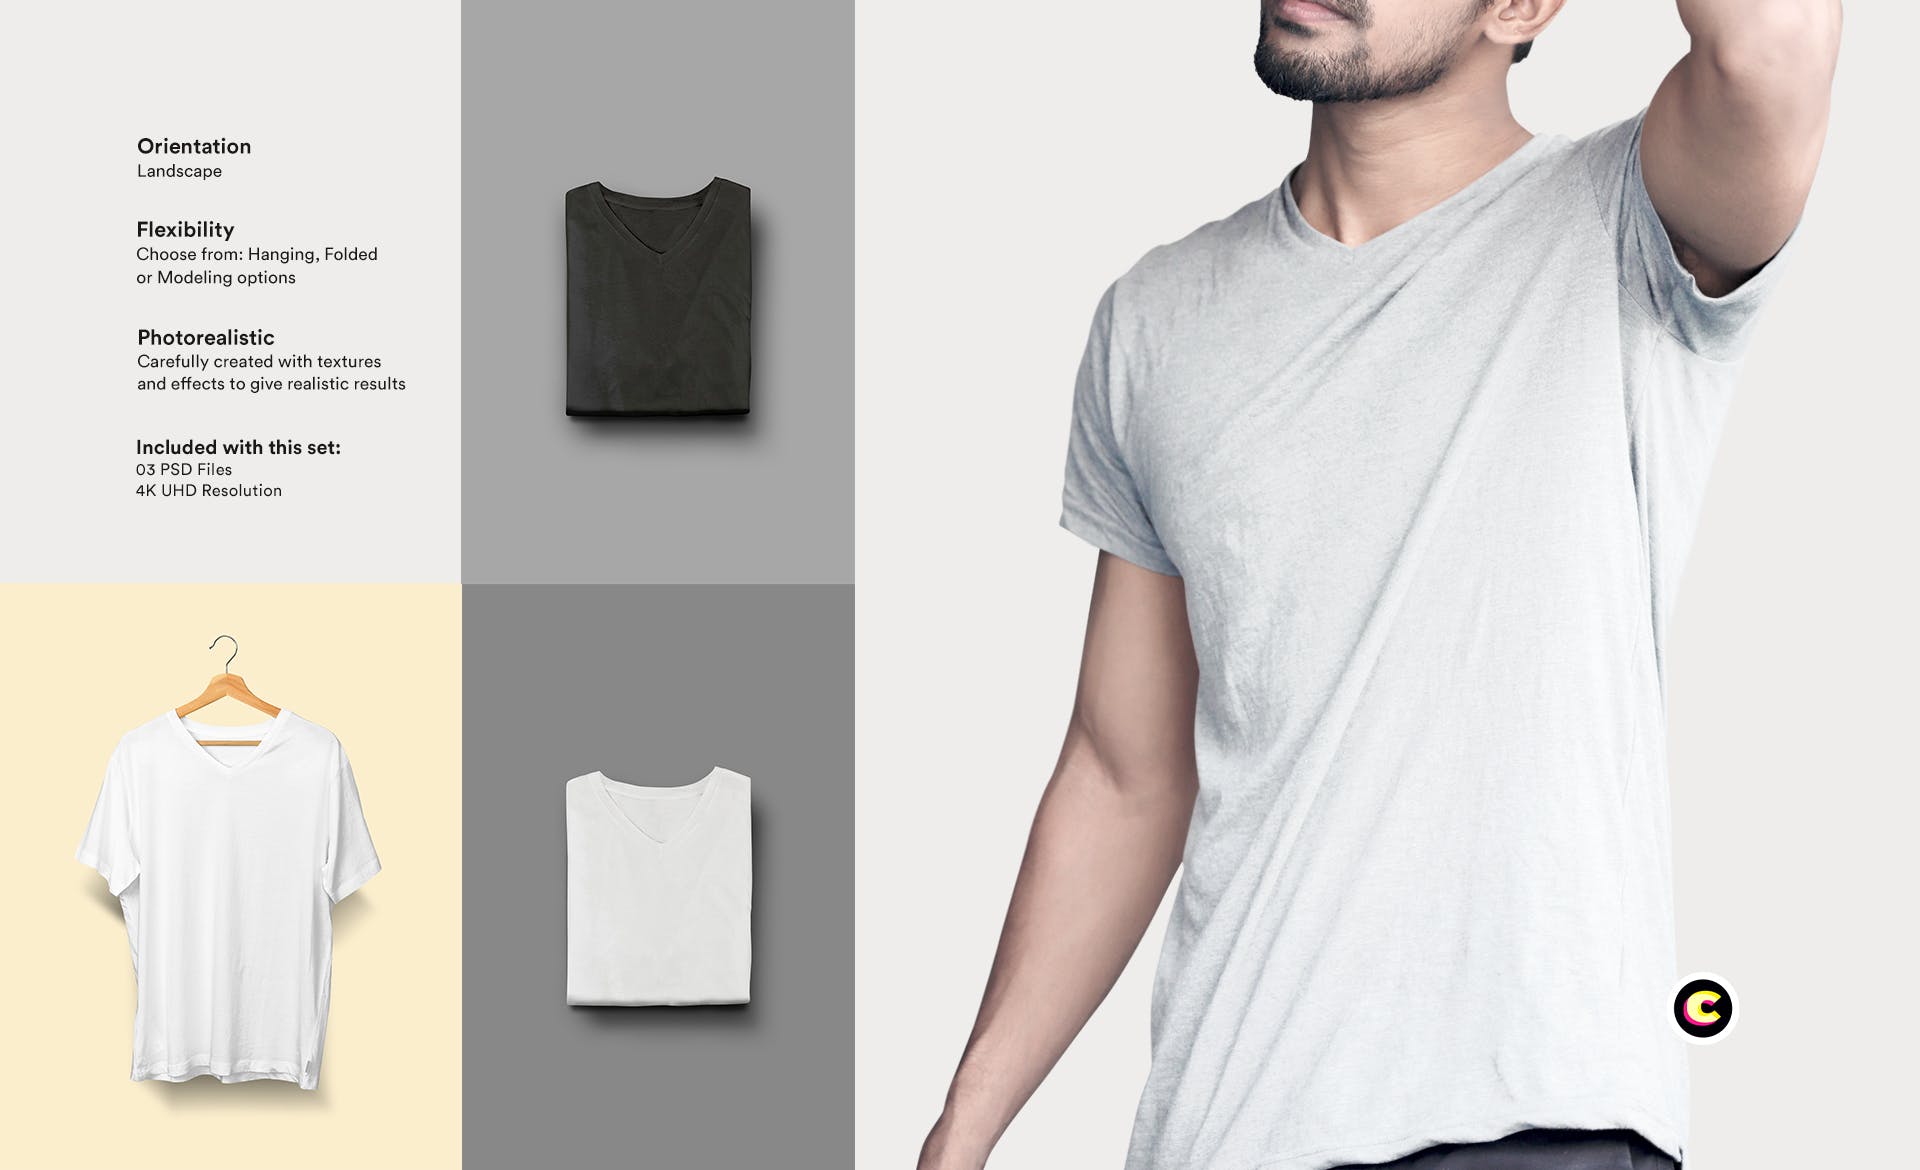 经典V领T恤作品设计展示样机第一素材精选模板 V-Neck T-Shirt Mock-up插图(1)